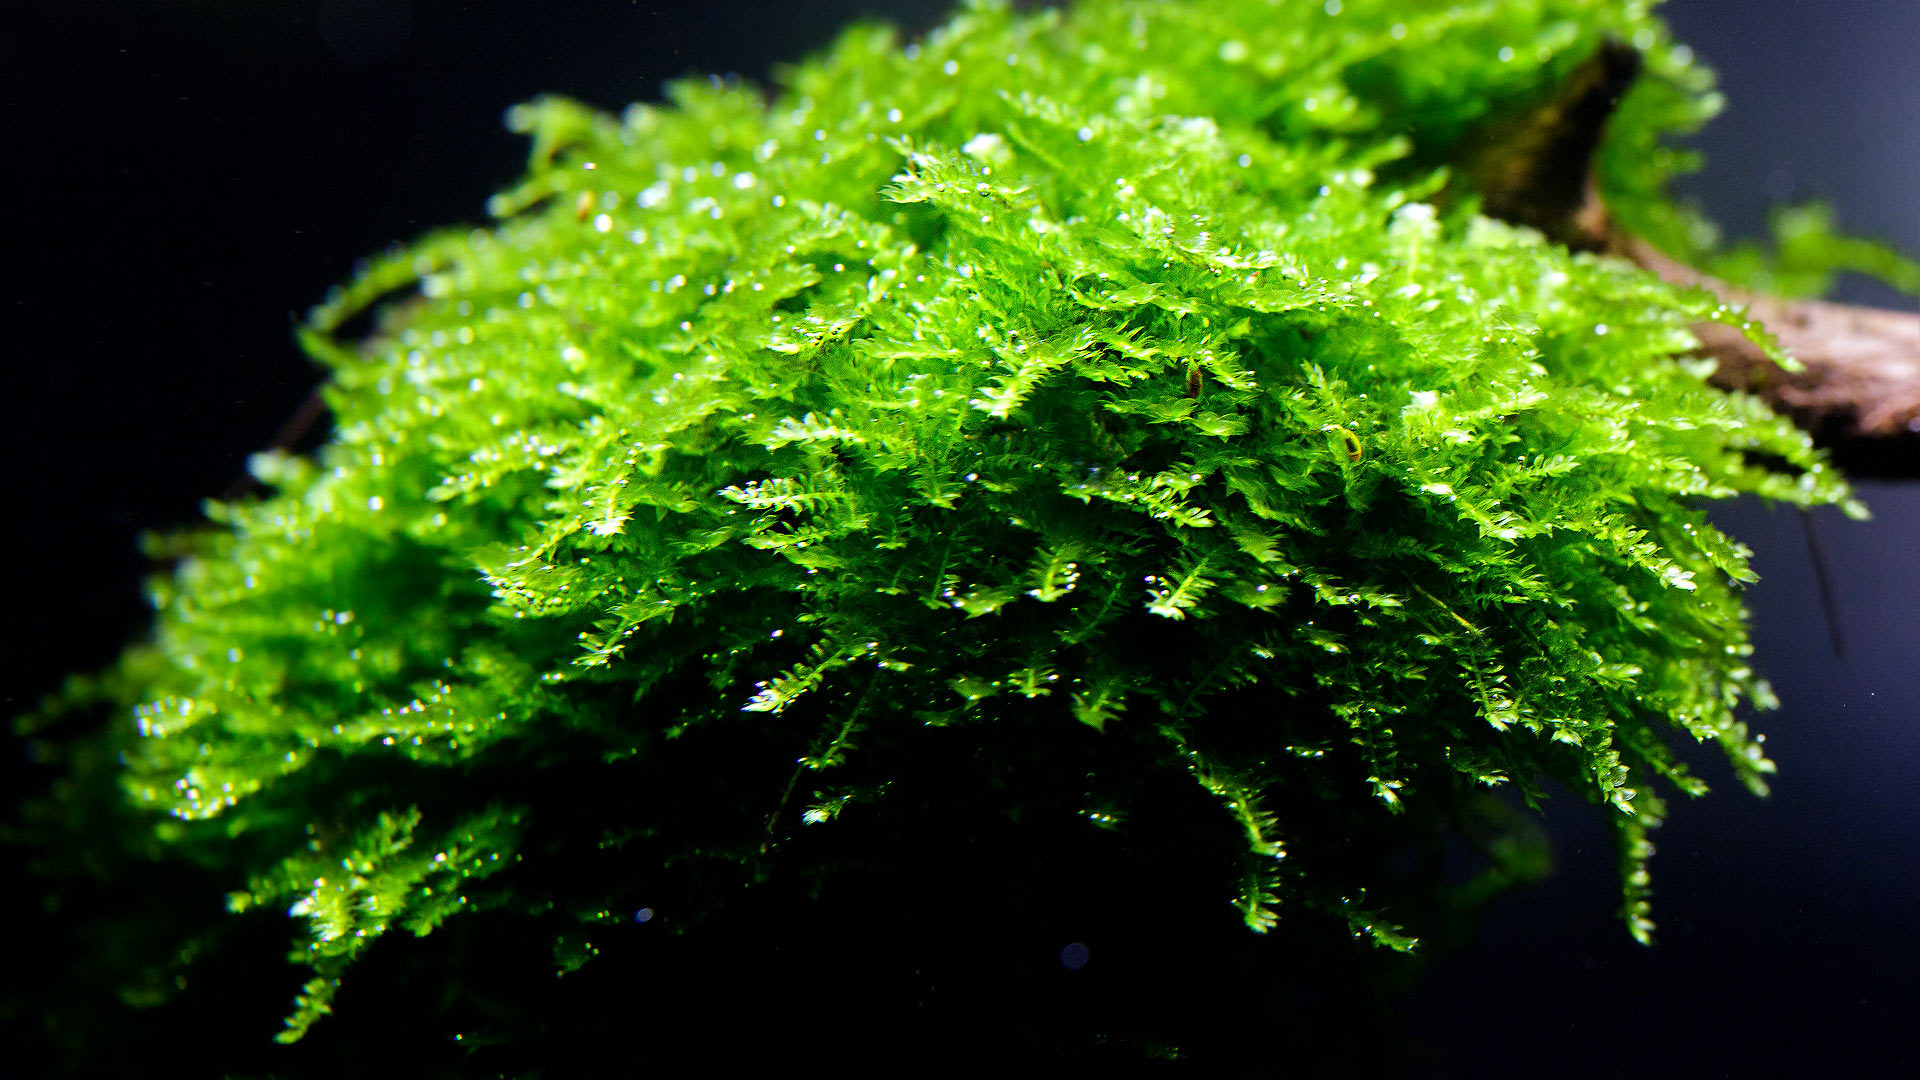 Vesicularia montagnei (Christmas moss)